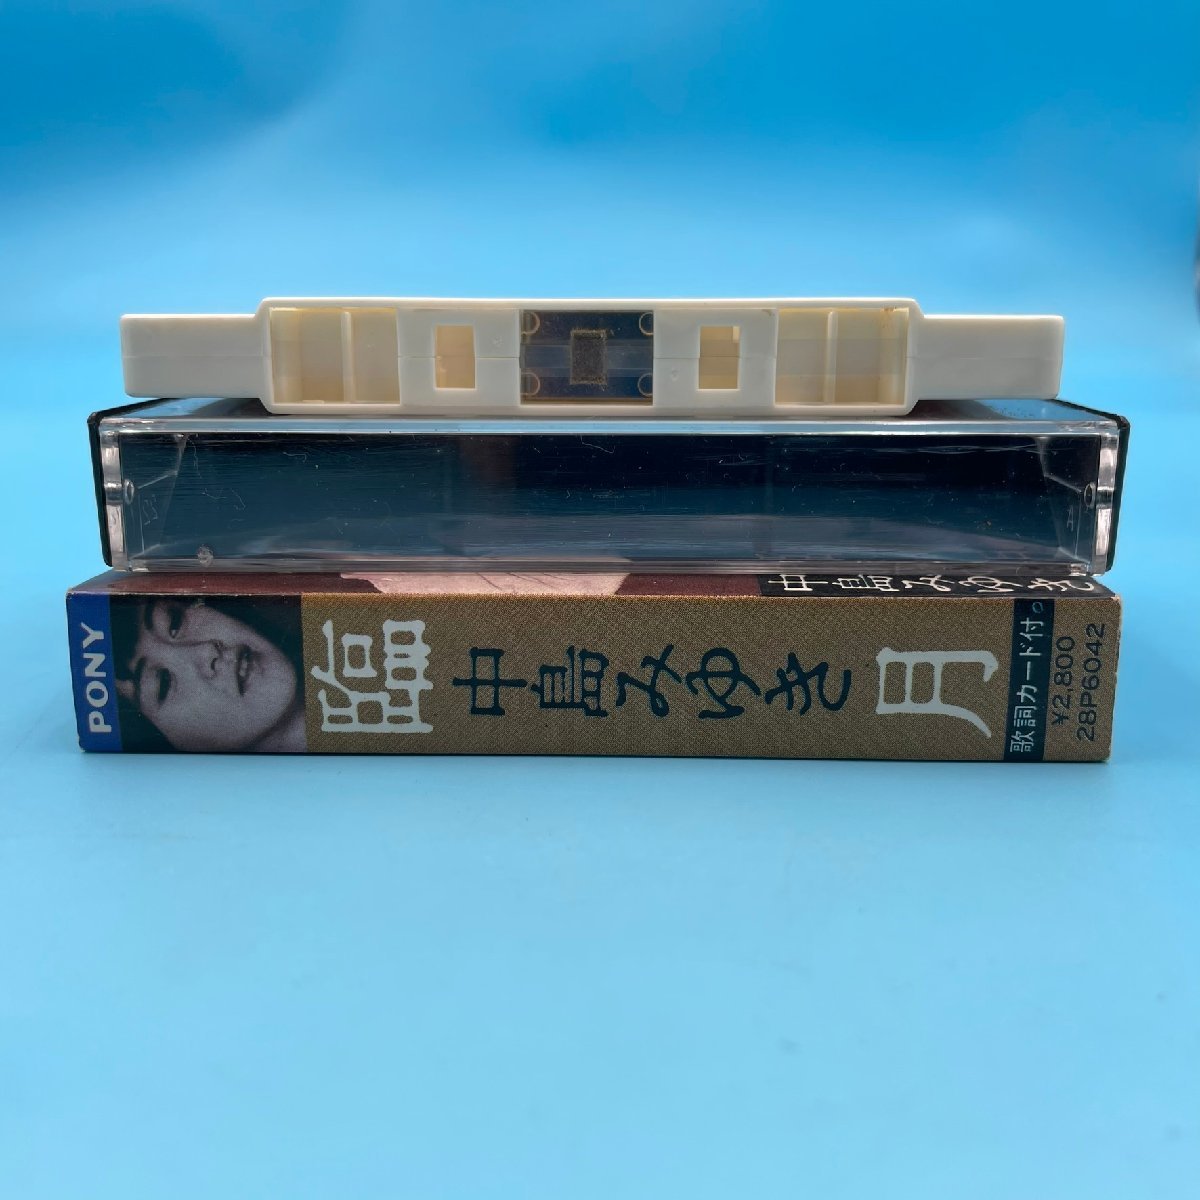 [A9515P005] кассетная лента Nakajima Miyuki [. месяц ]. сделал погода .../... зеркало /... хорошо сделанный / автобус в соответствии /. человек поколение др. поп-музыка Японская музыка 